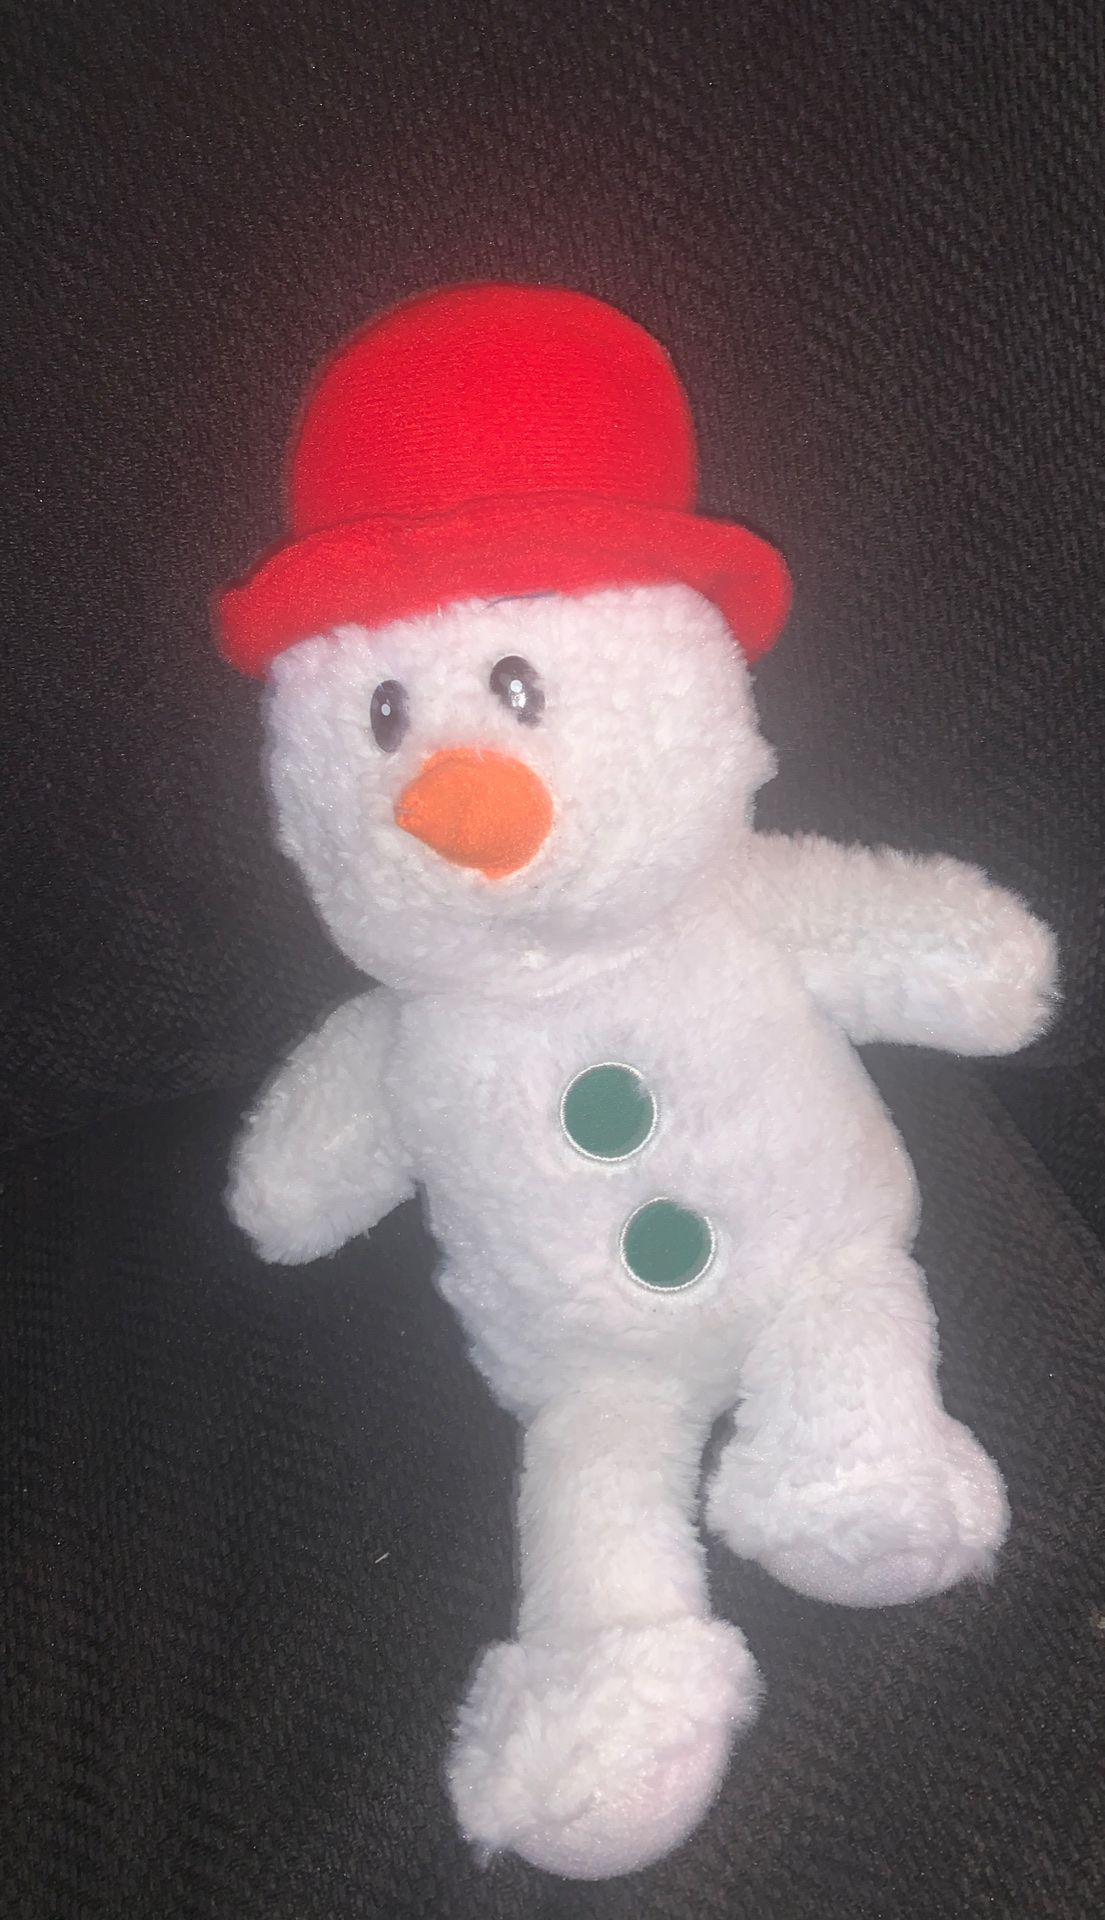 Mini snowman $1 stuffed animal